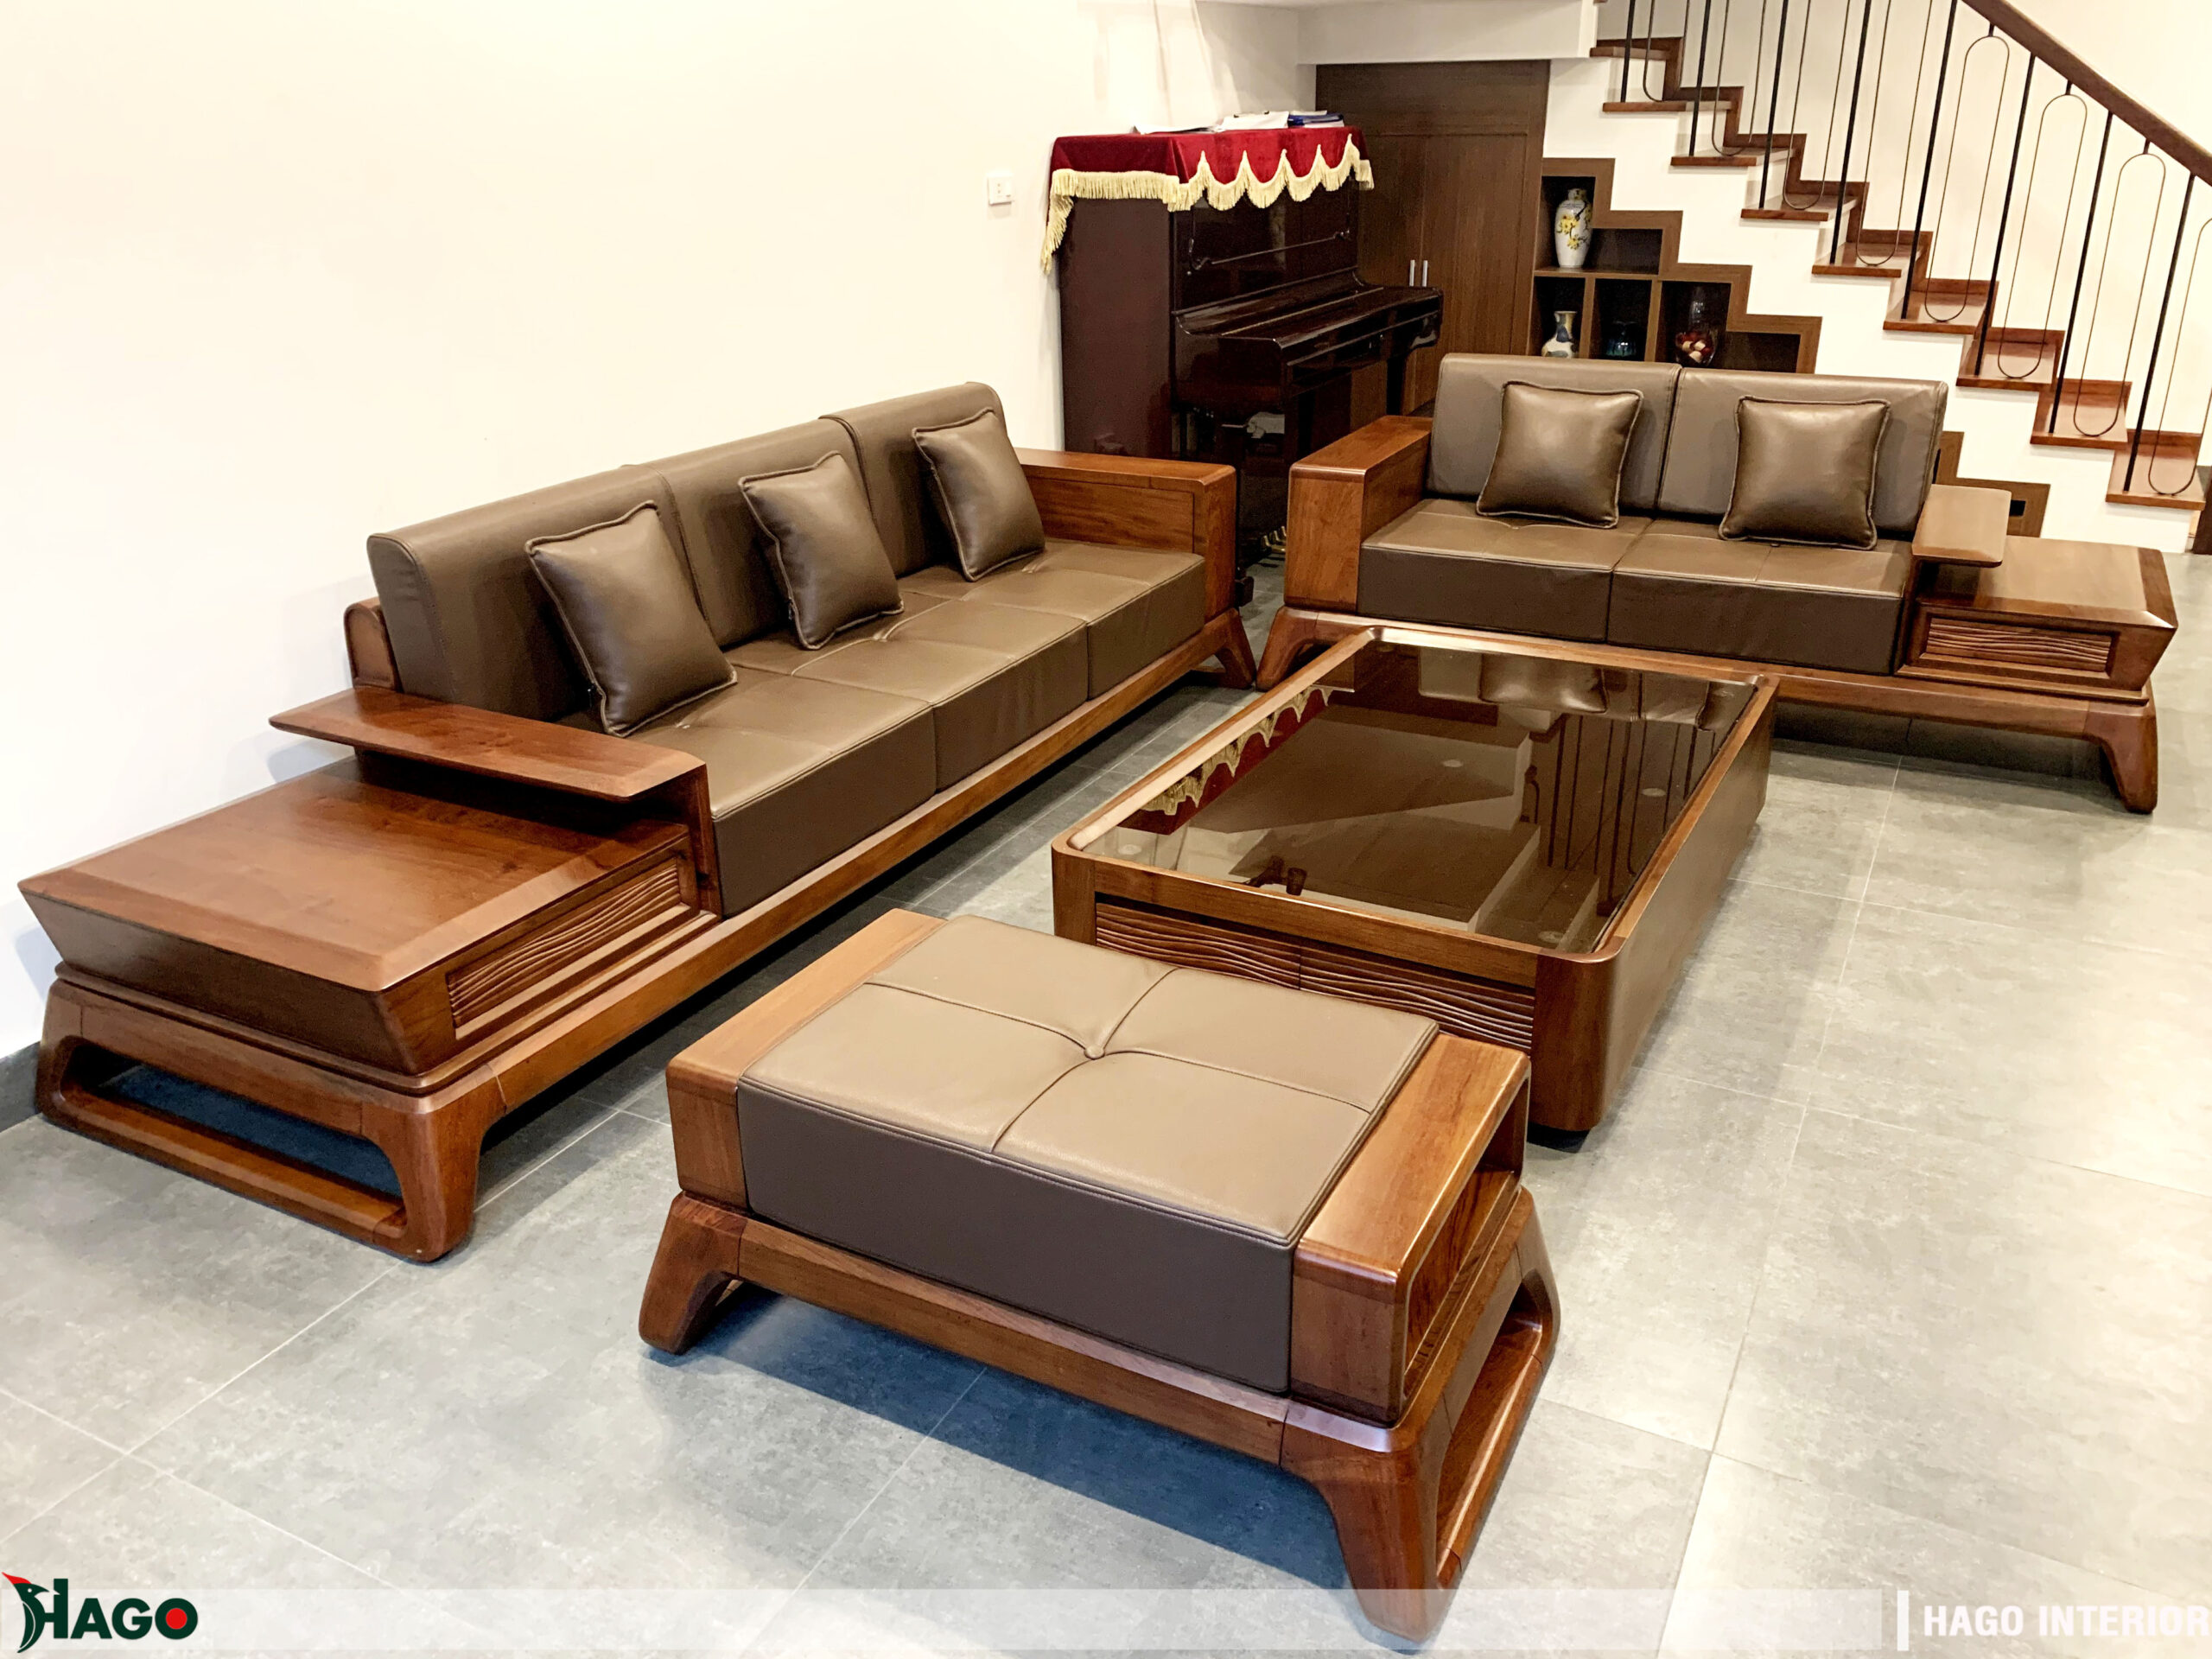 Bộ bàn ghế sofa gỗ tự nhiên bán chạy nhất tại nội thất Hago Vinh